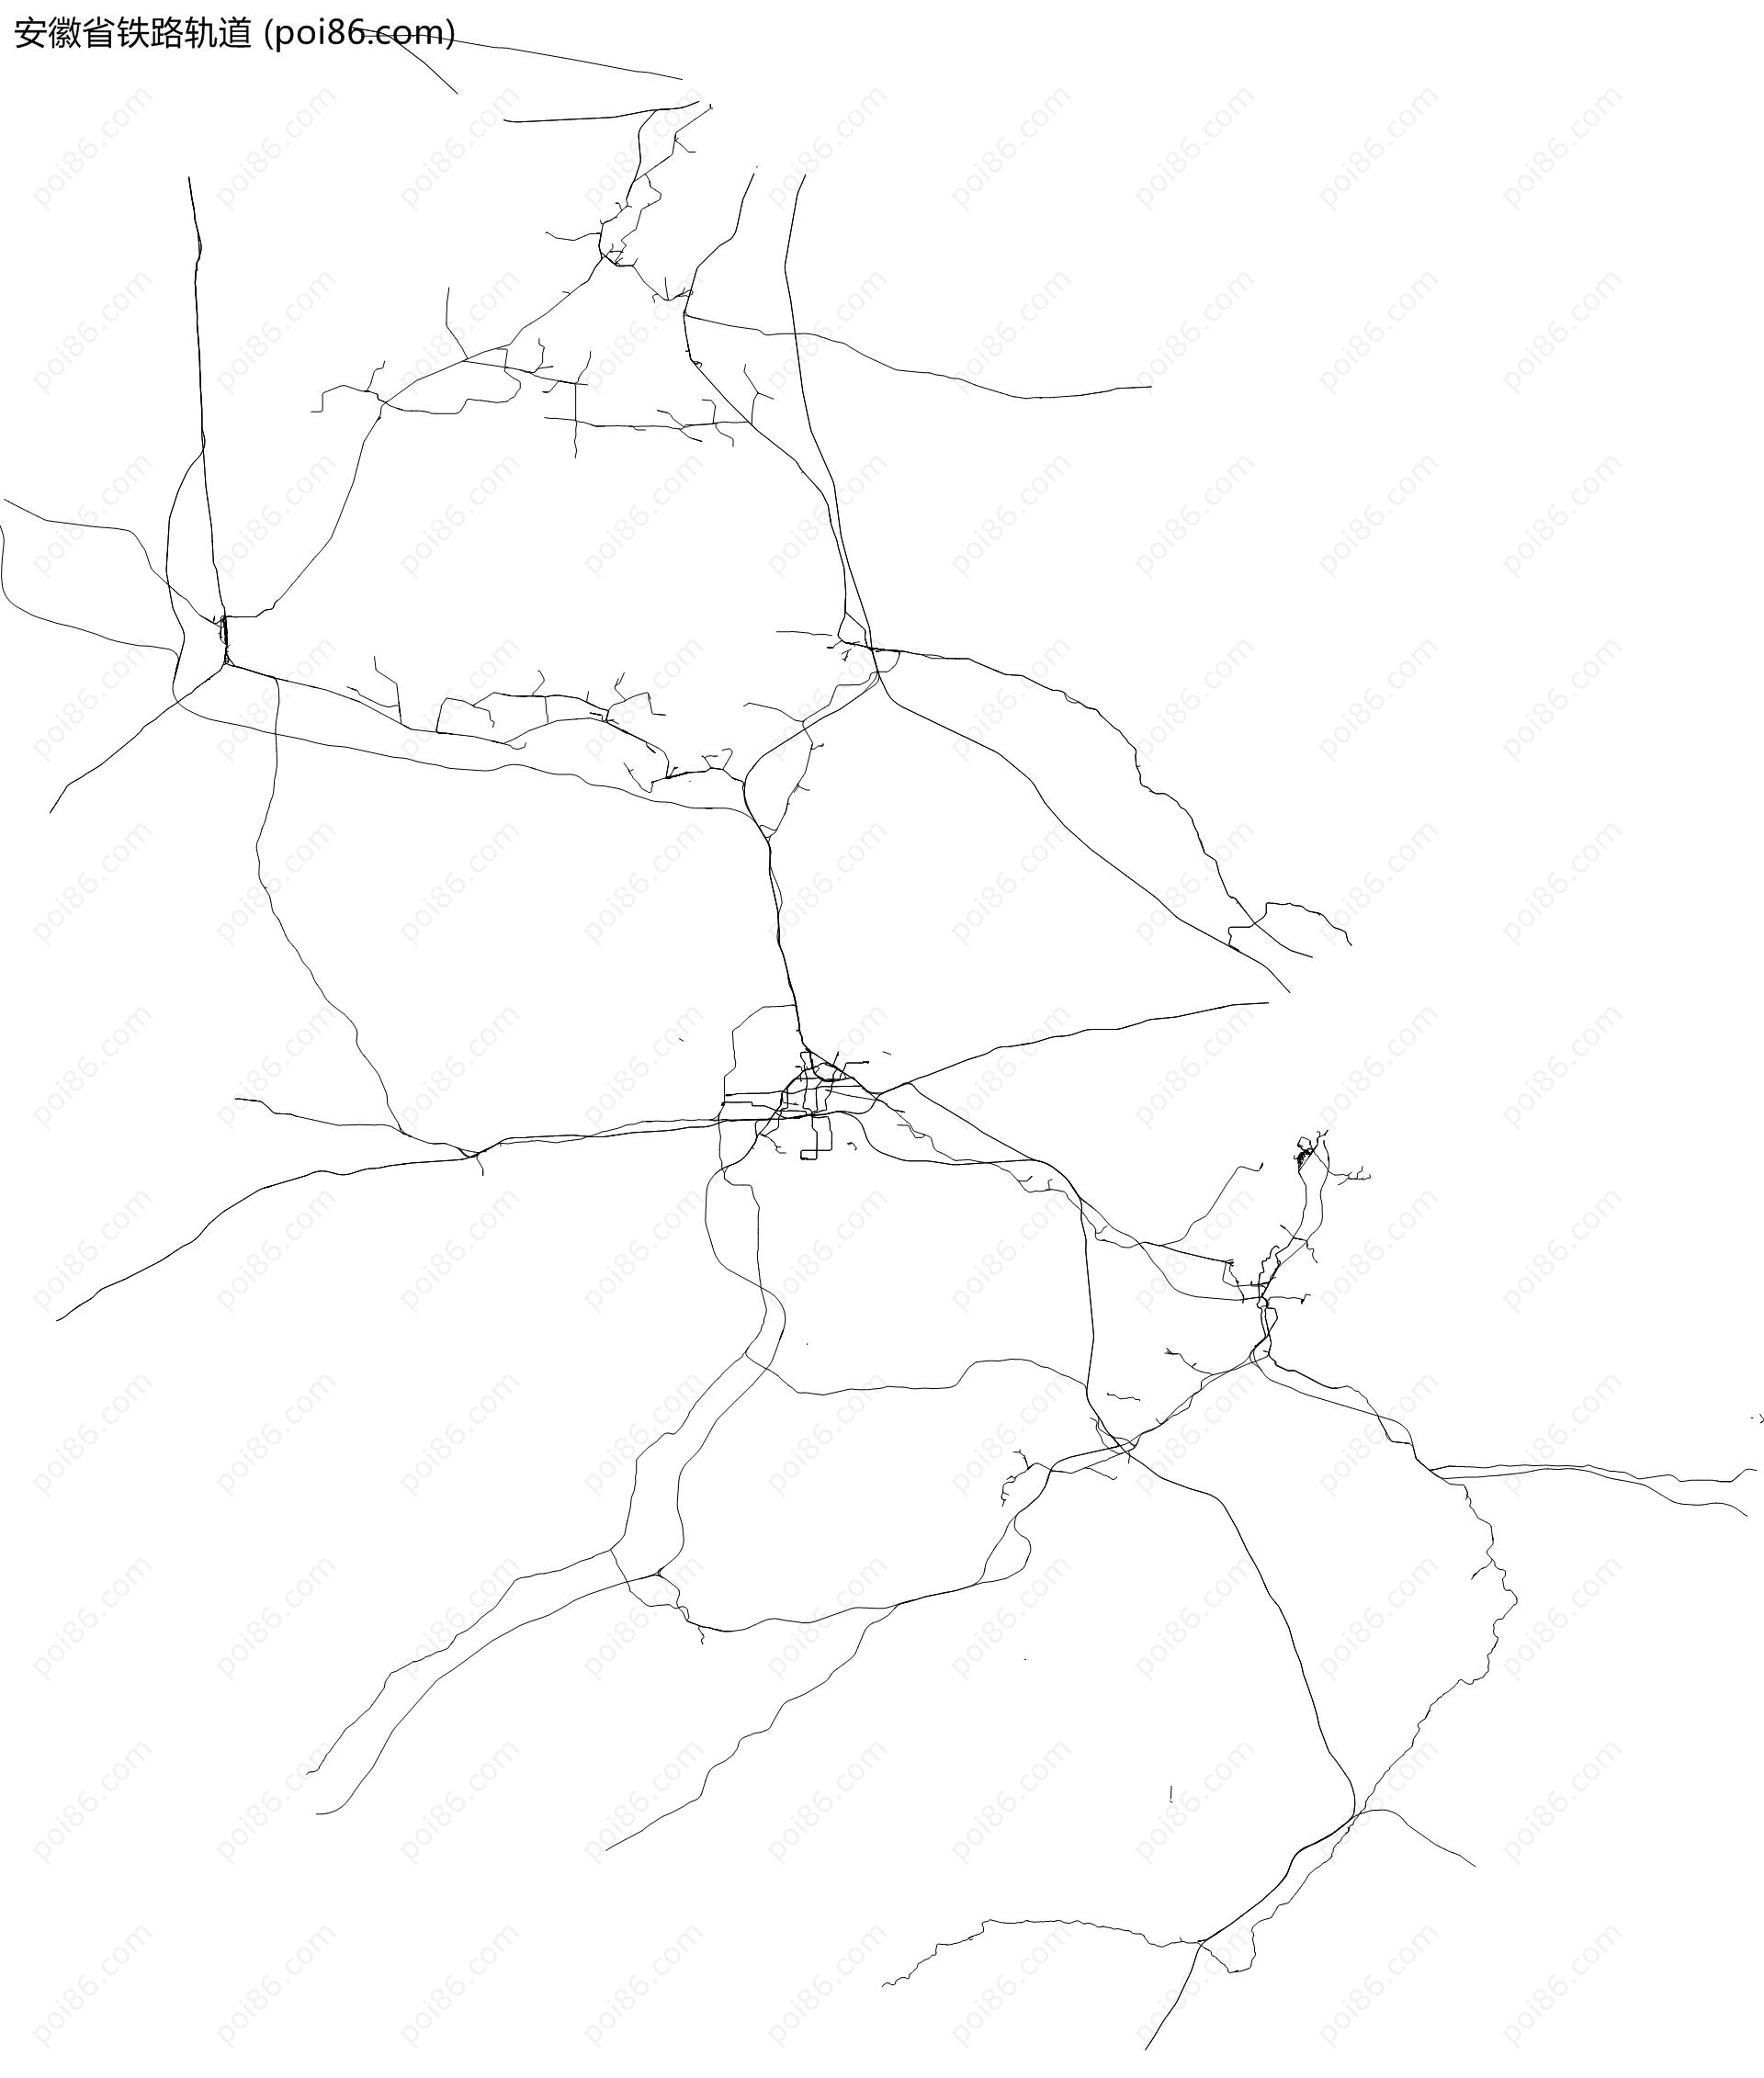 安徽省铁路轨道地图